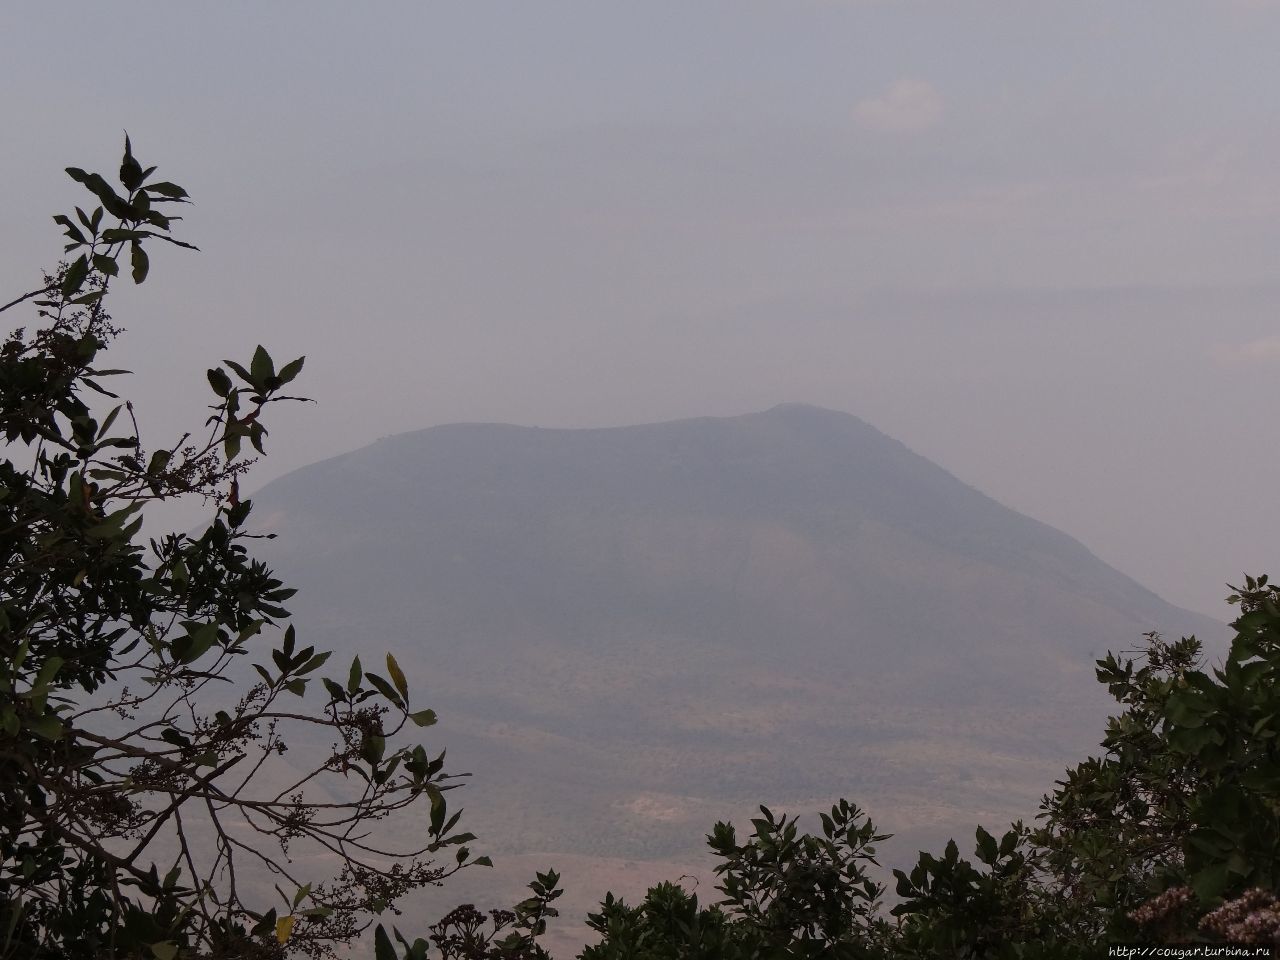 Вышли из машины. Справа — вулкан Керимаси. Нгоронгоро (заповедник в кратере вулкана), Танзания